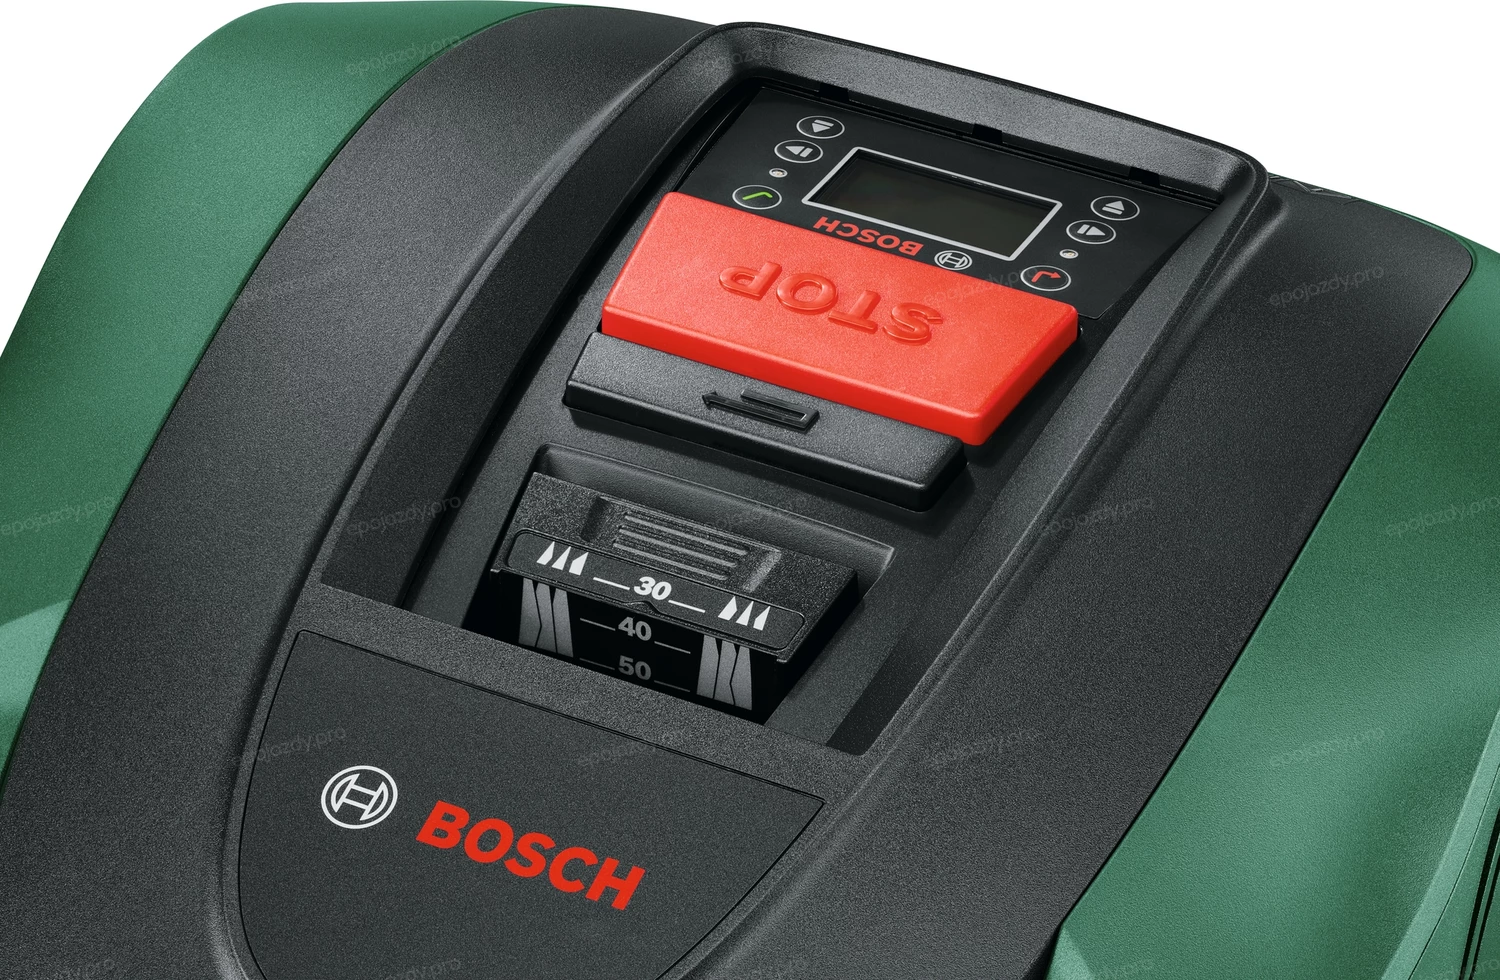 Robot koszący Bosch Indego S 500 jest bardzo prosty w obsłudze